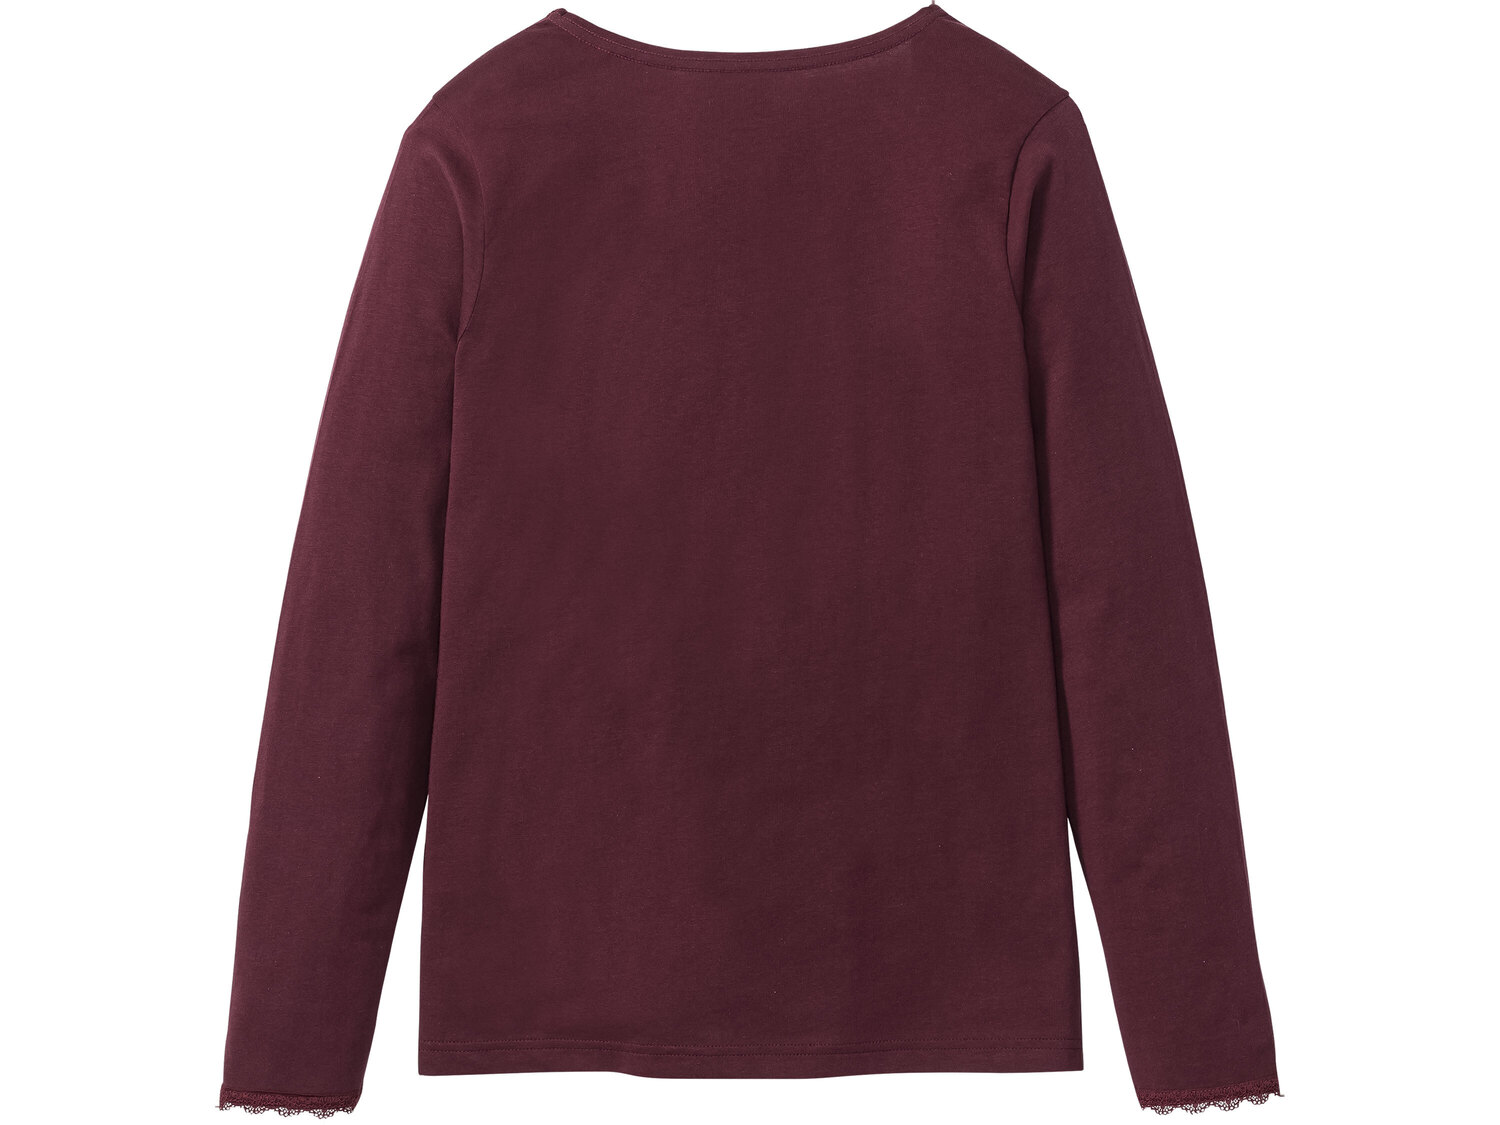 Piżama Esmara Lingerie, cena 34,99 PLN 
- koszulka 100% bawełny
- spodnie z wysoką ...